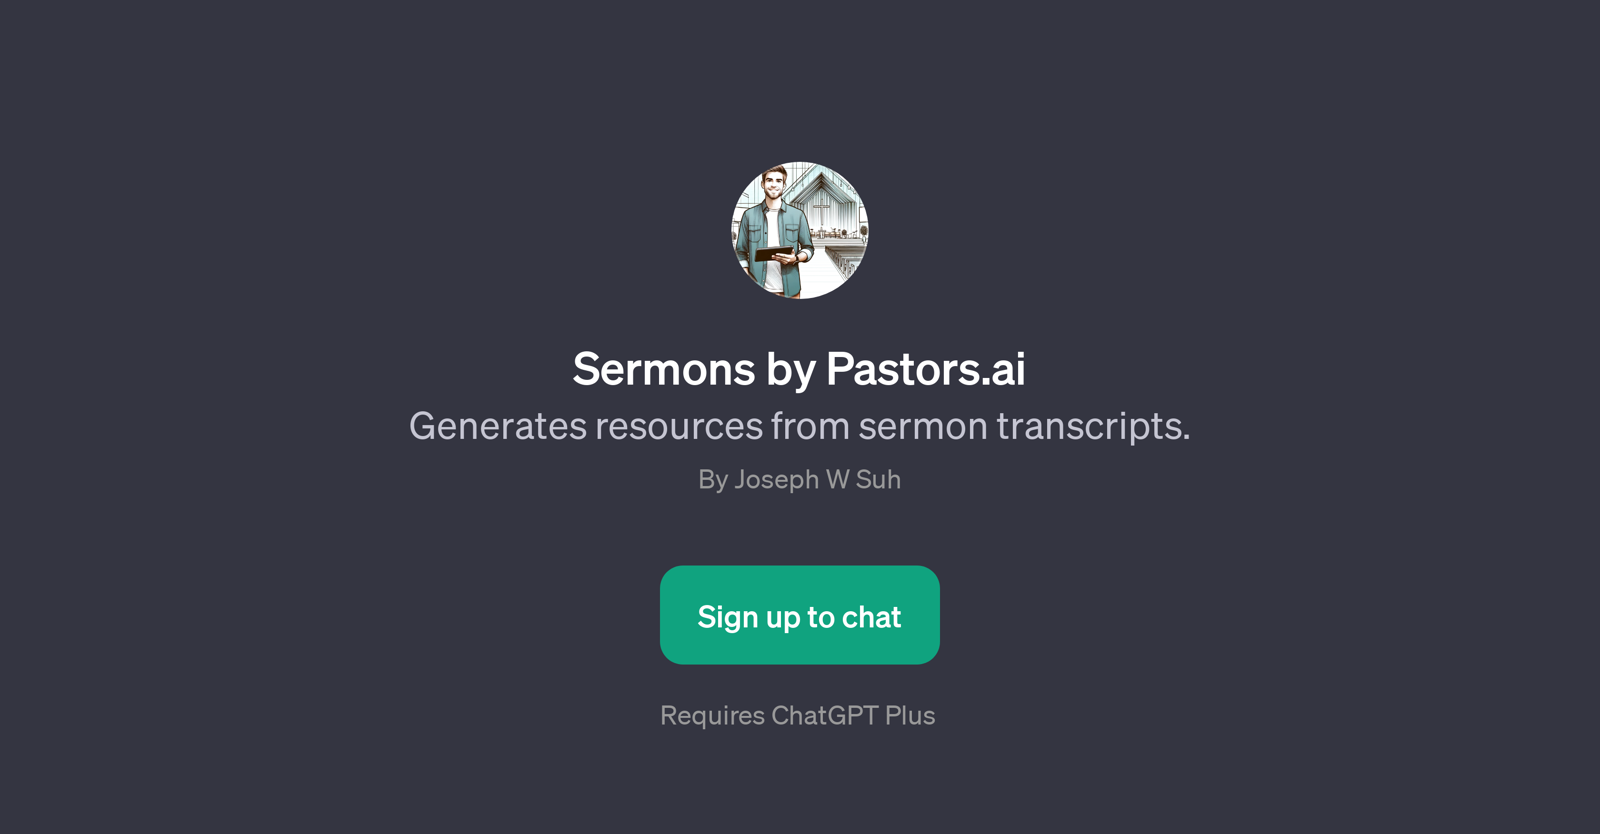 Sermons by Pastors.ai website